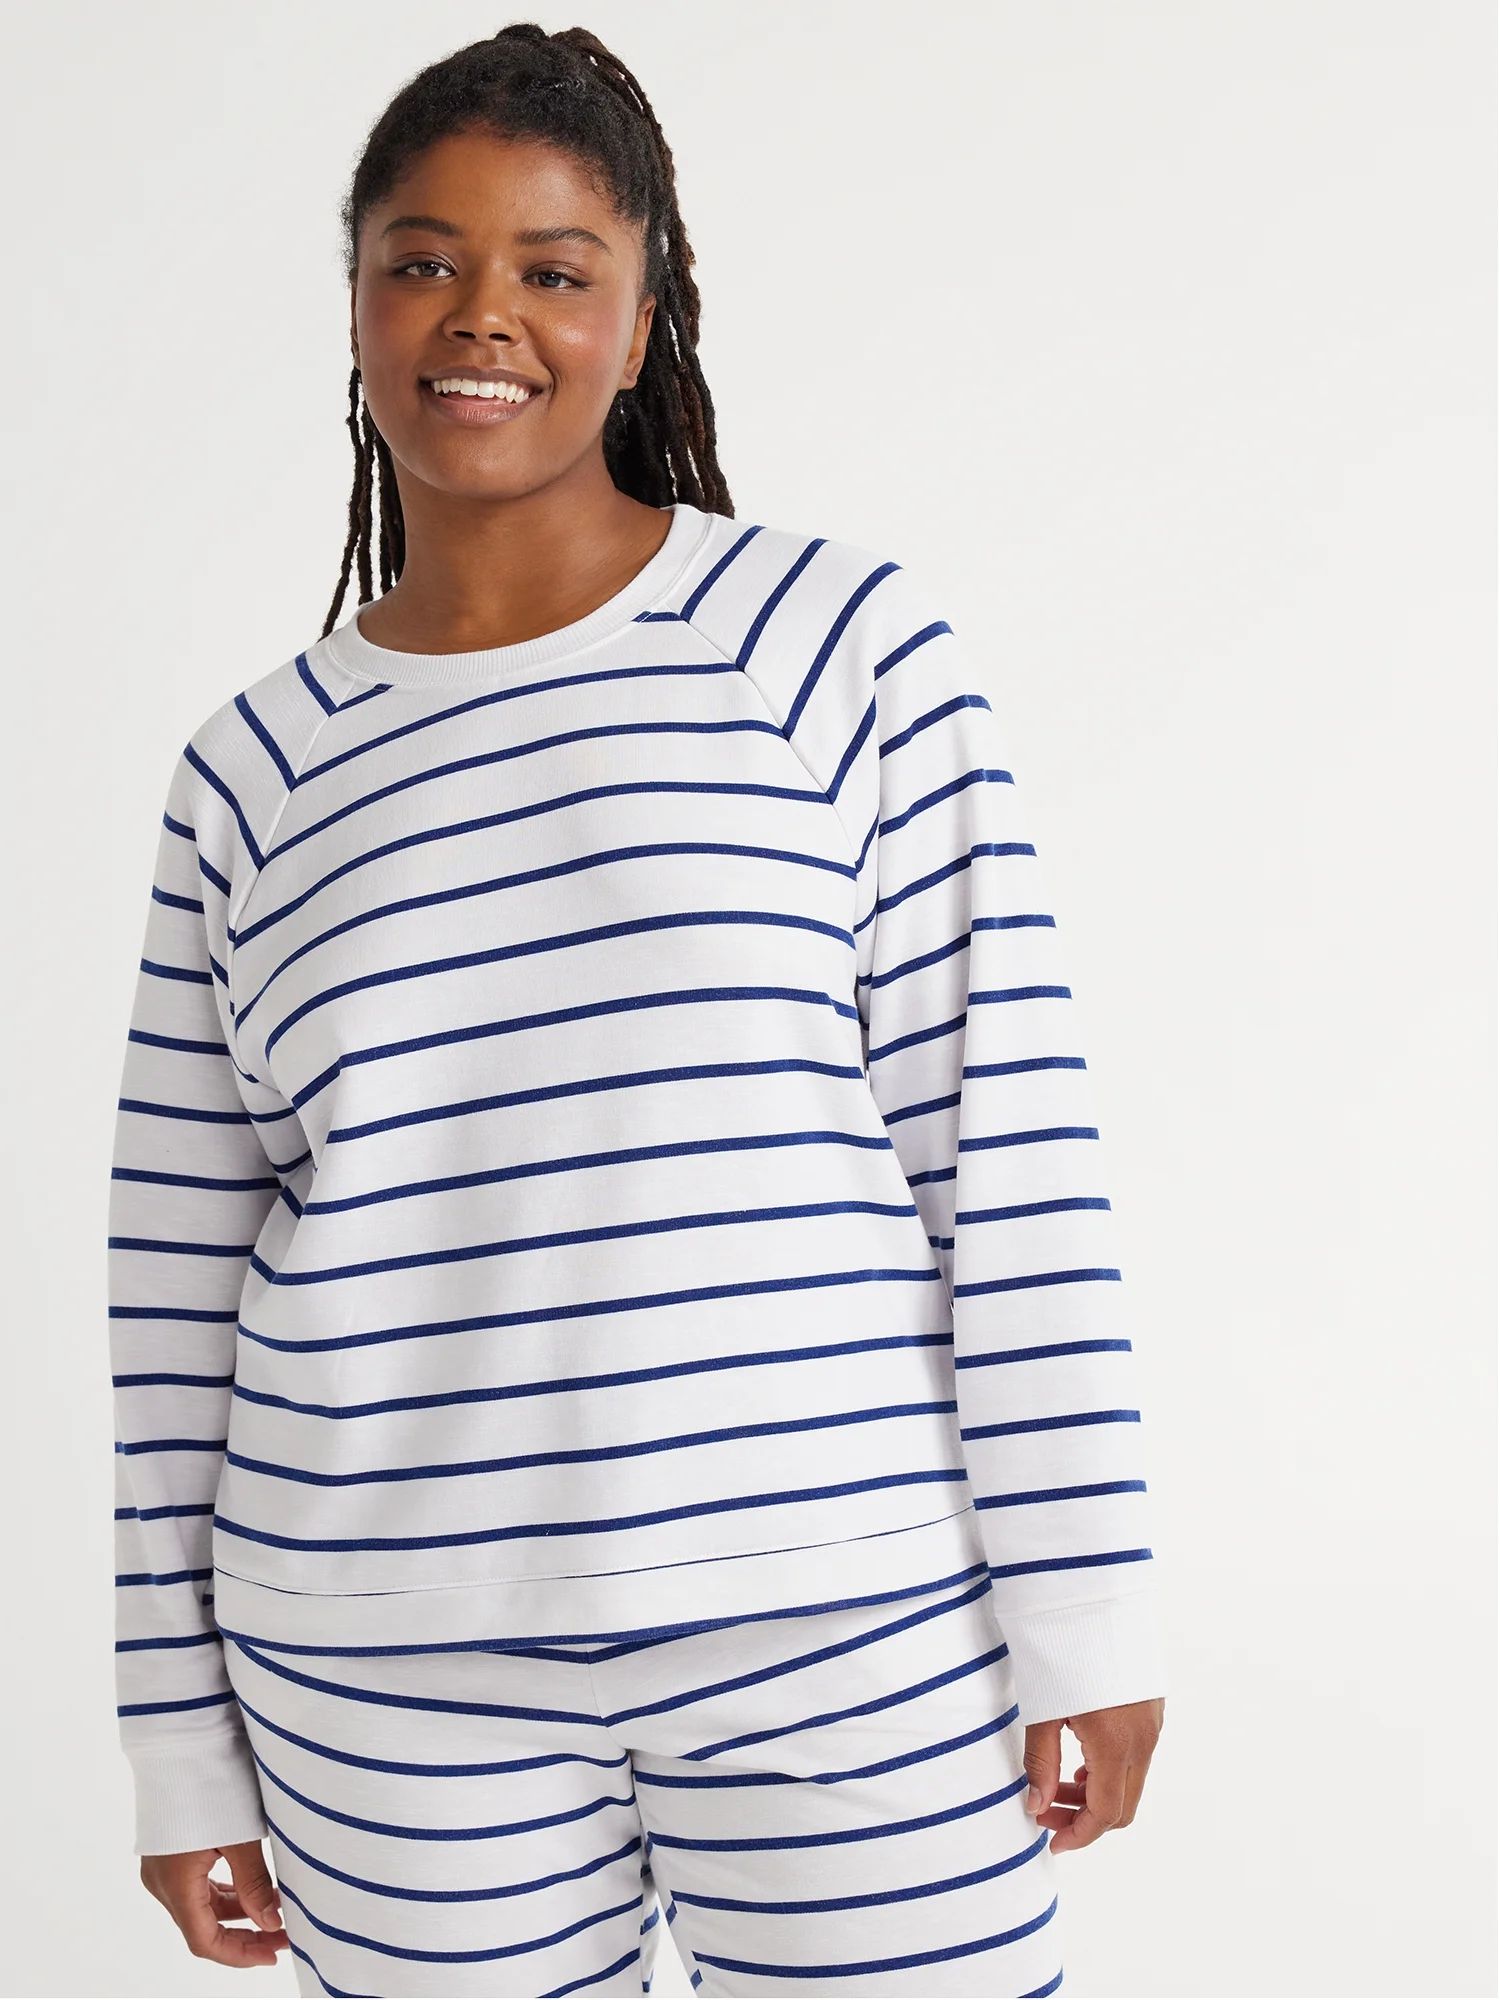 Joyspun Women's Fleece Sleep Top with Long Sleeves, Sizes XS to 3X | Walmart (US)